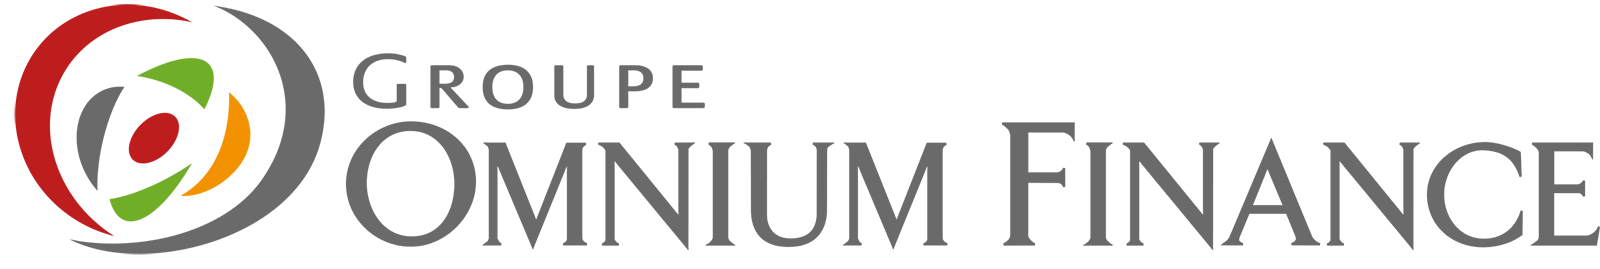 Logo Omnium